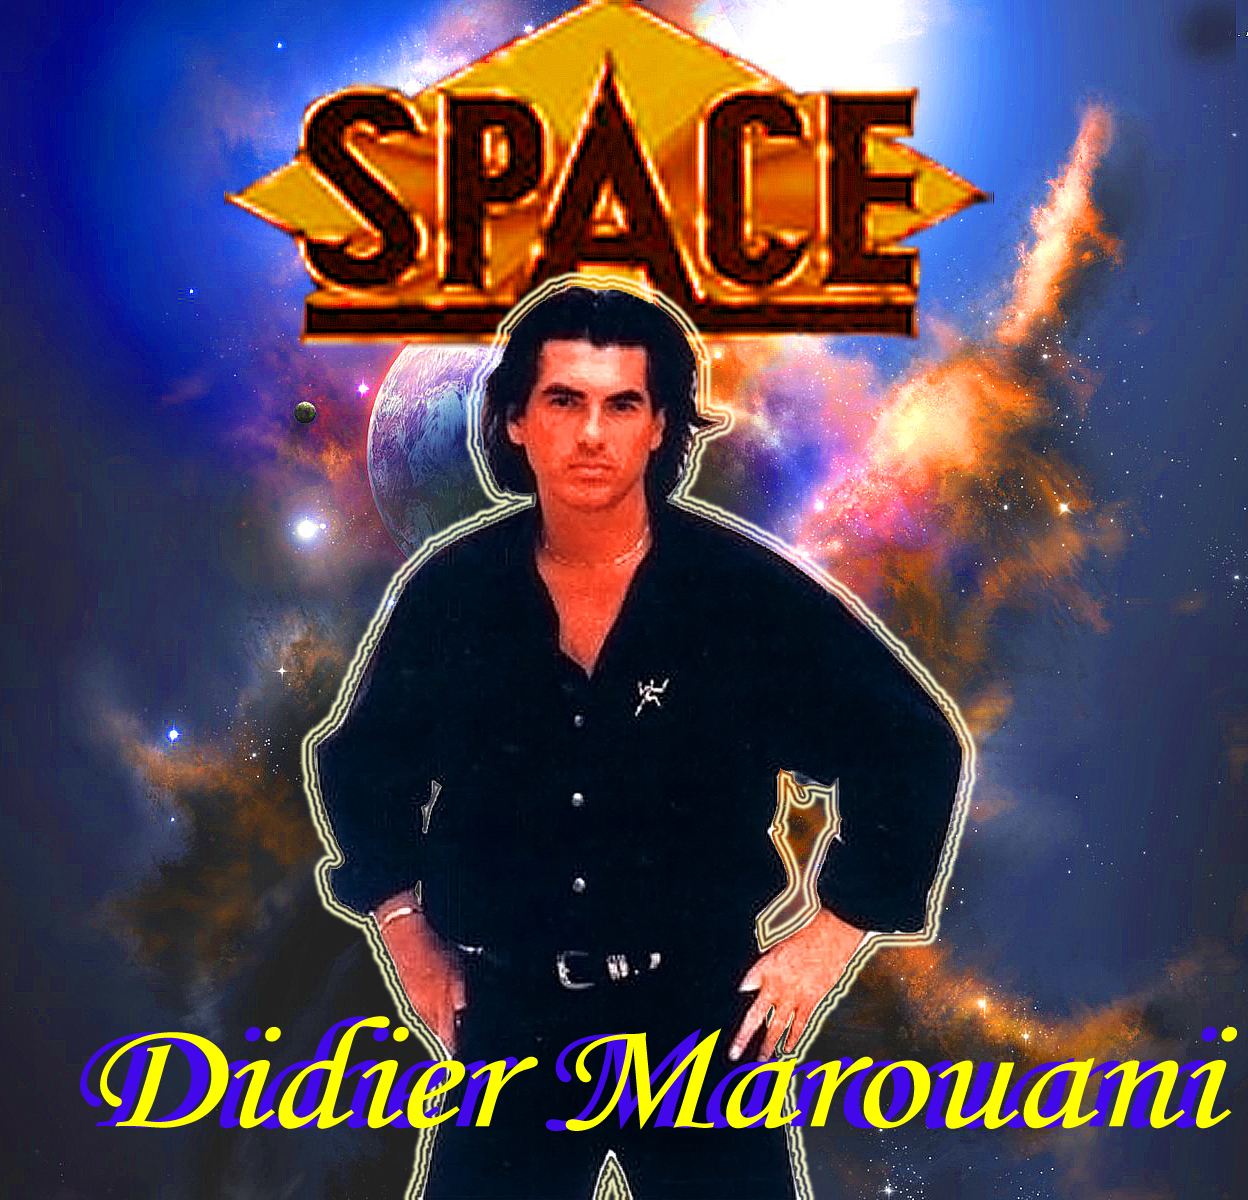 Звездная mp3. Дидье Маруани и группа Space. Дискография Didier Marouani-Space. Группа Space 1977. Спейс Дидье Маруани 1977.